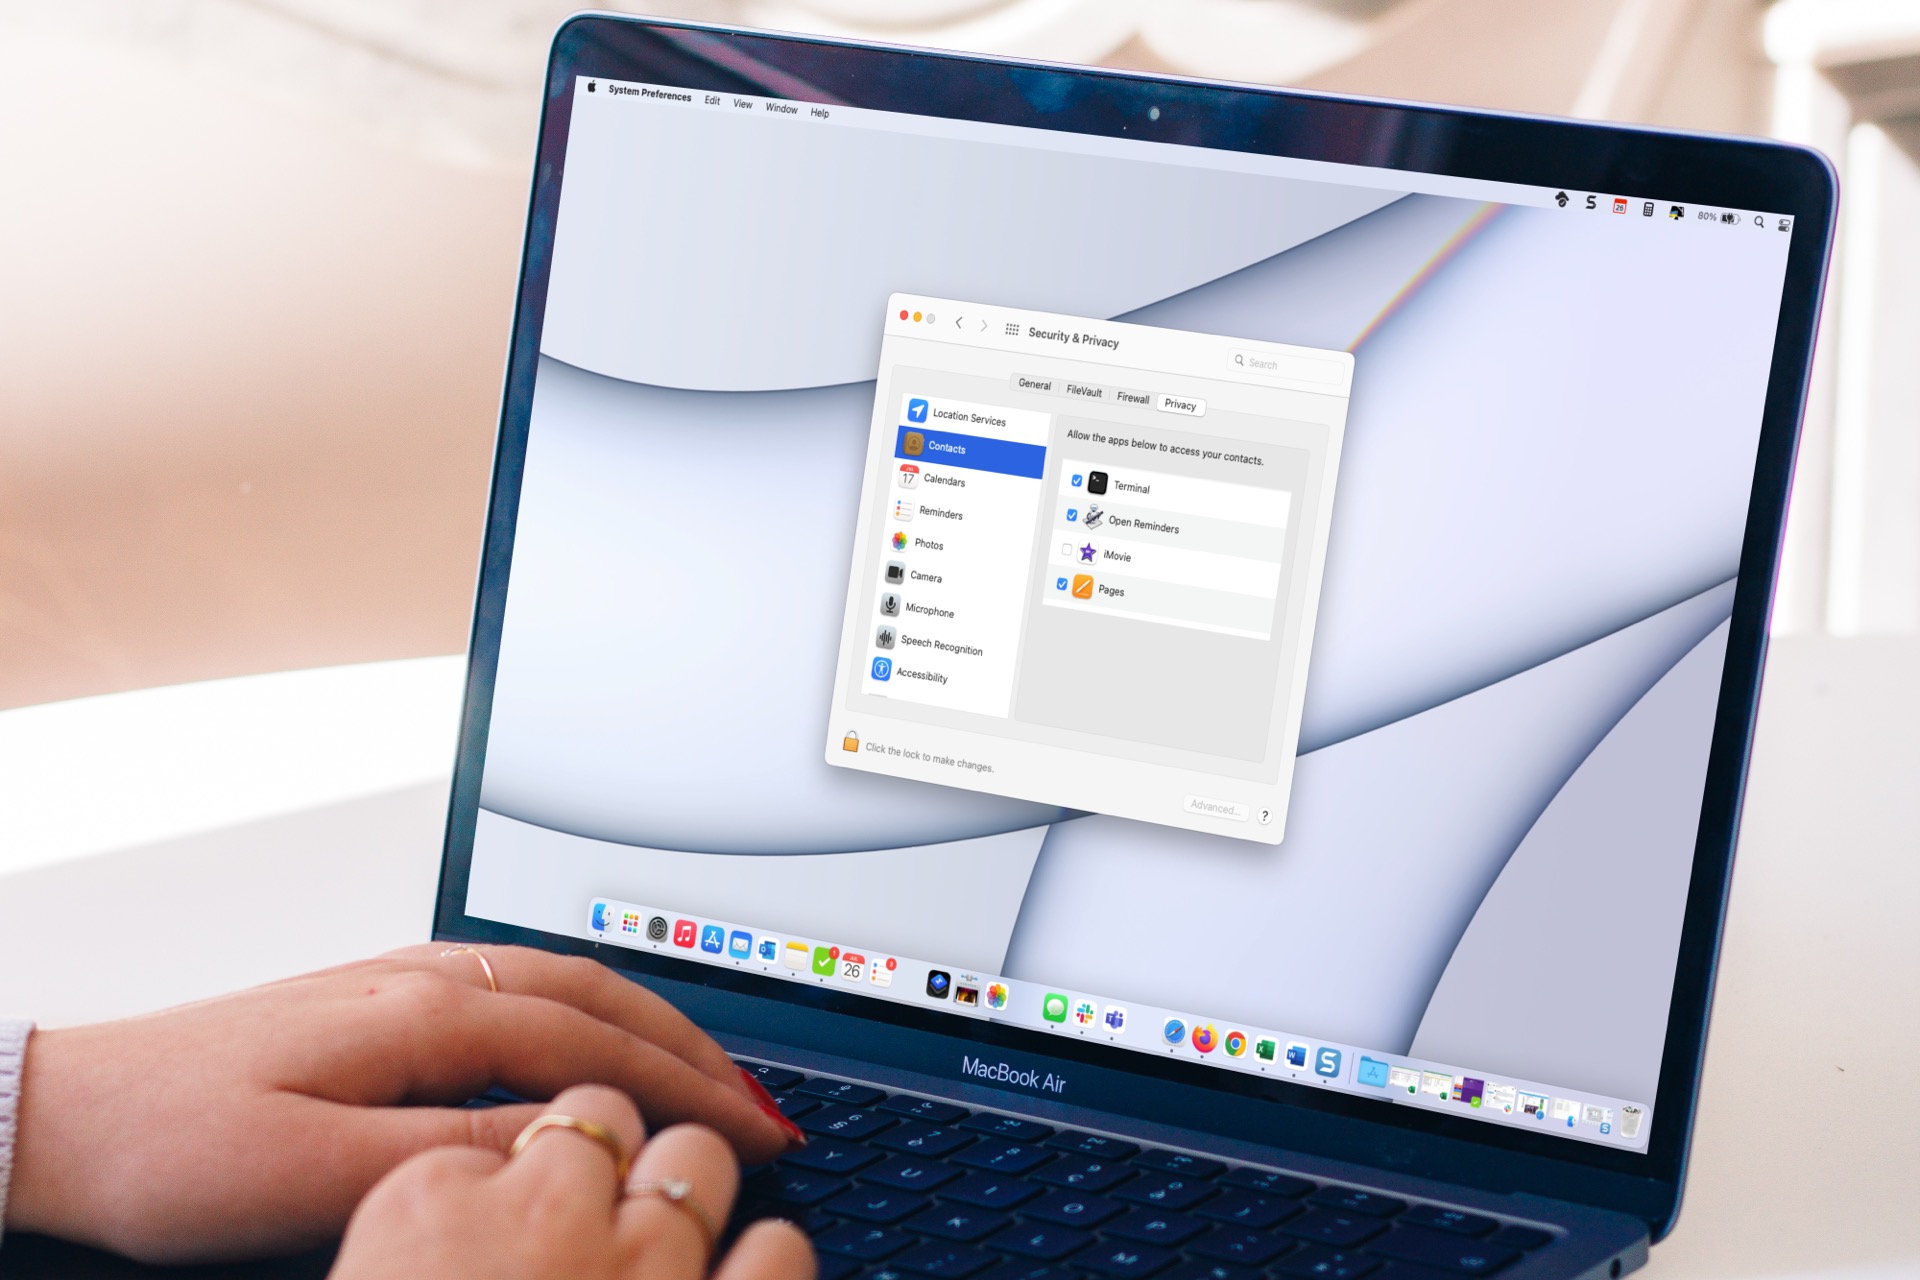 As configurações de segurança e privacidade são abertas em um MacBook.